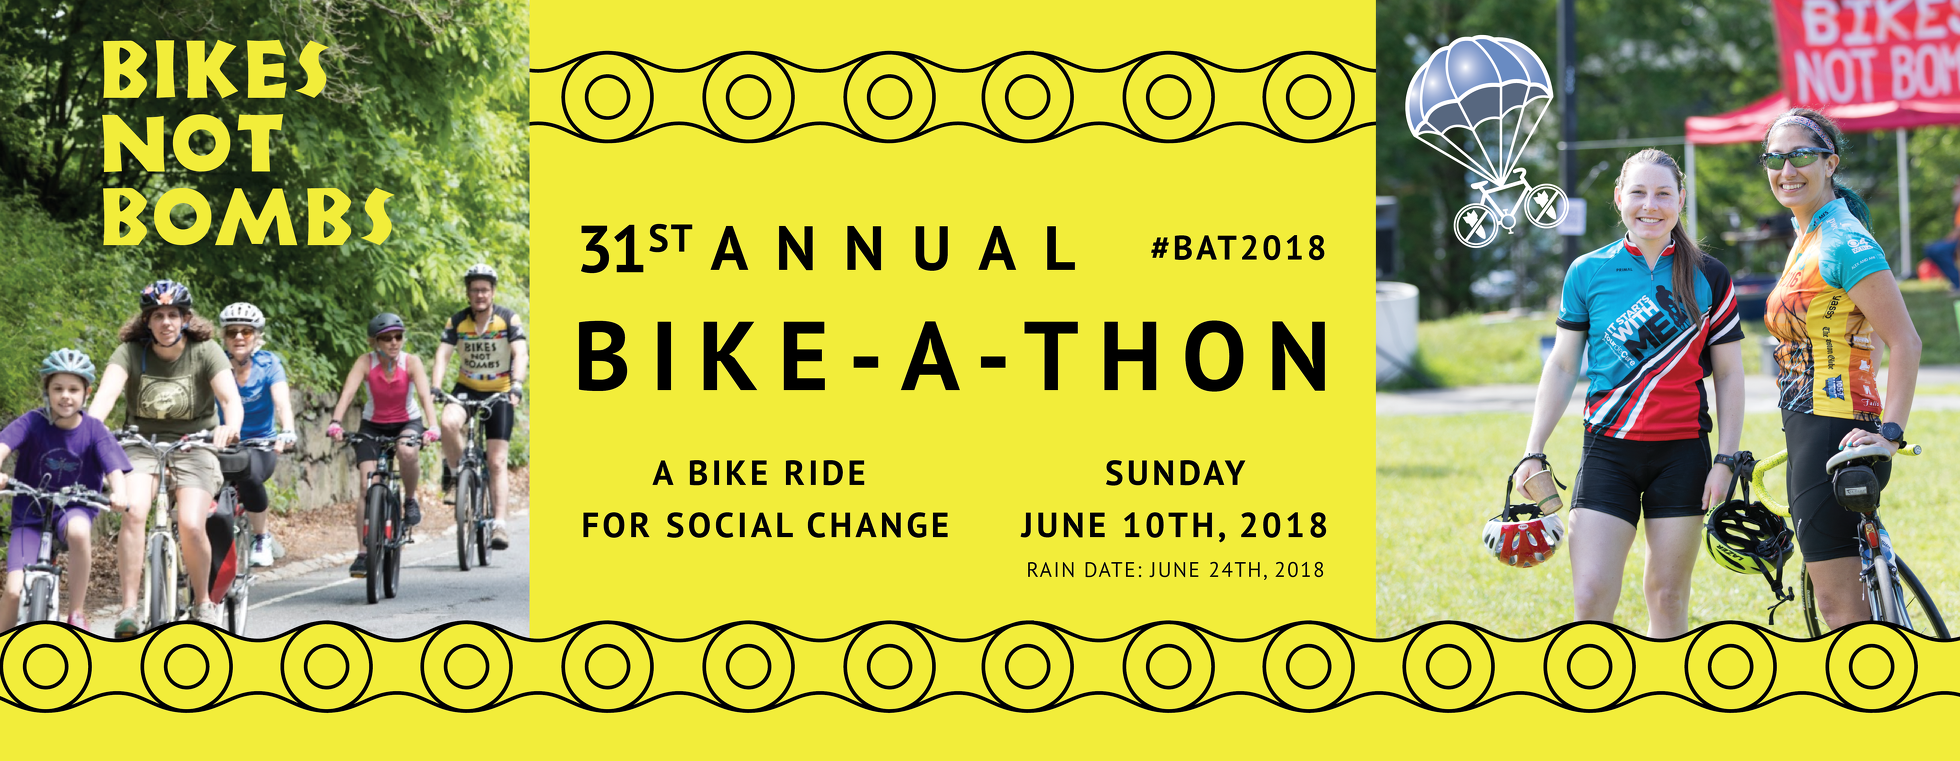 31st Annual Bike-A-Thon 2018